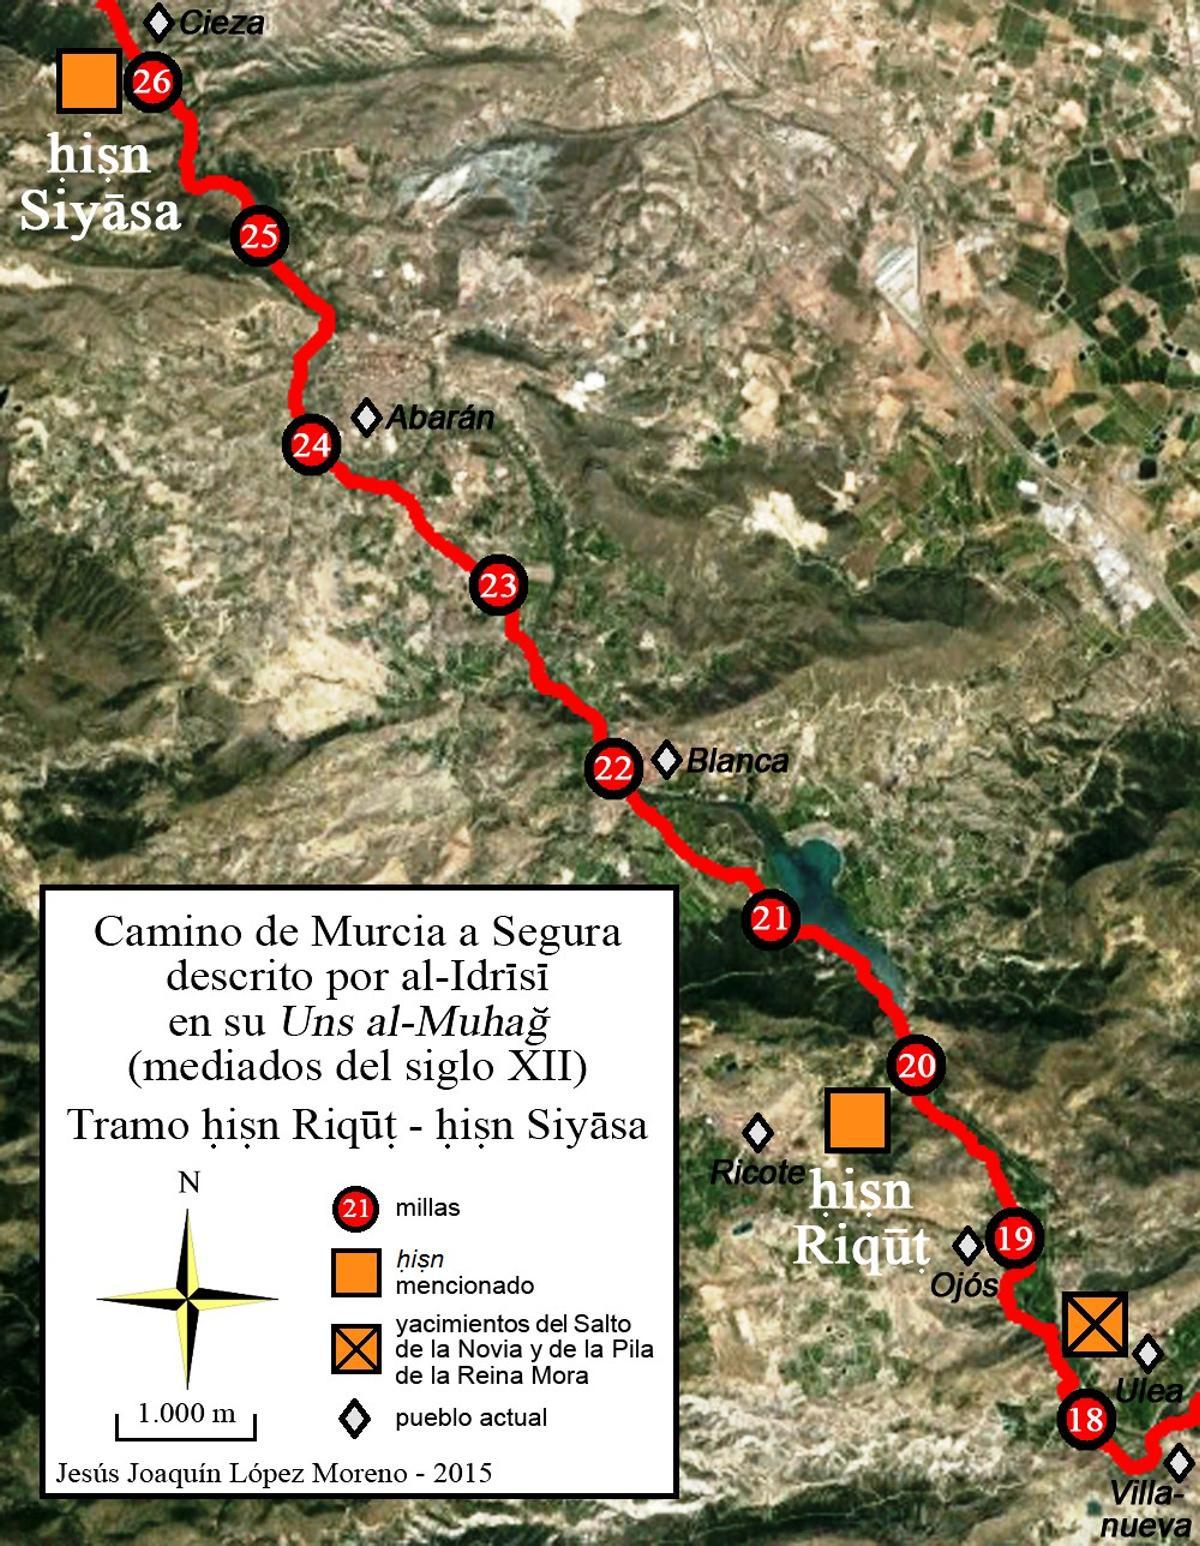 Camino histórico de Murcia a Segura descrito por al-Idrisi a mediados del siglo XII (tramo Villanueva del Río Segura-Cieza). Trazado sobre ortofotografía de 2012 (Google Earth)